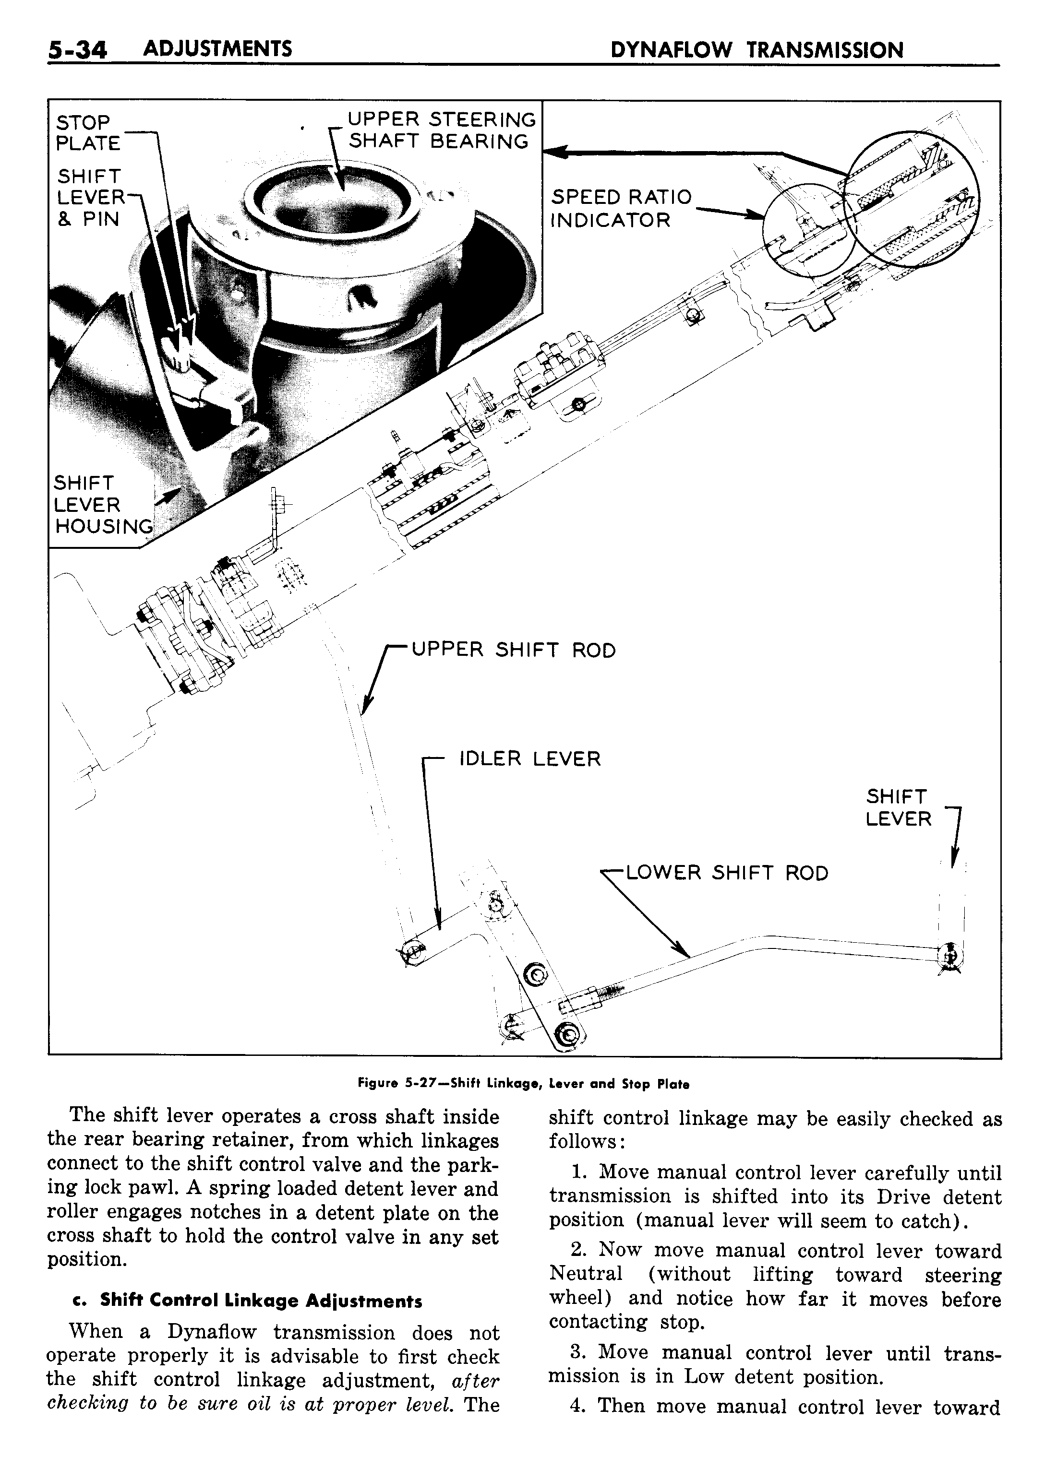 n_06 1957 Buick Shop Manual - Dynaflow-034-034.jpg